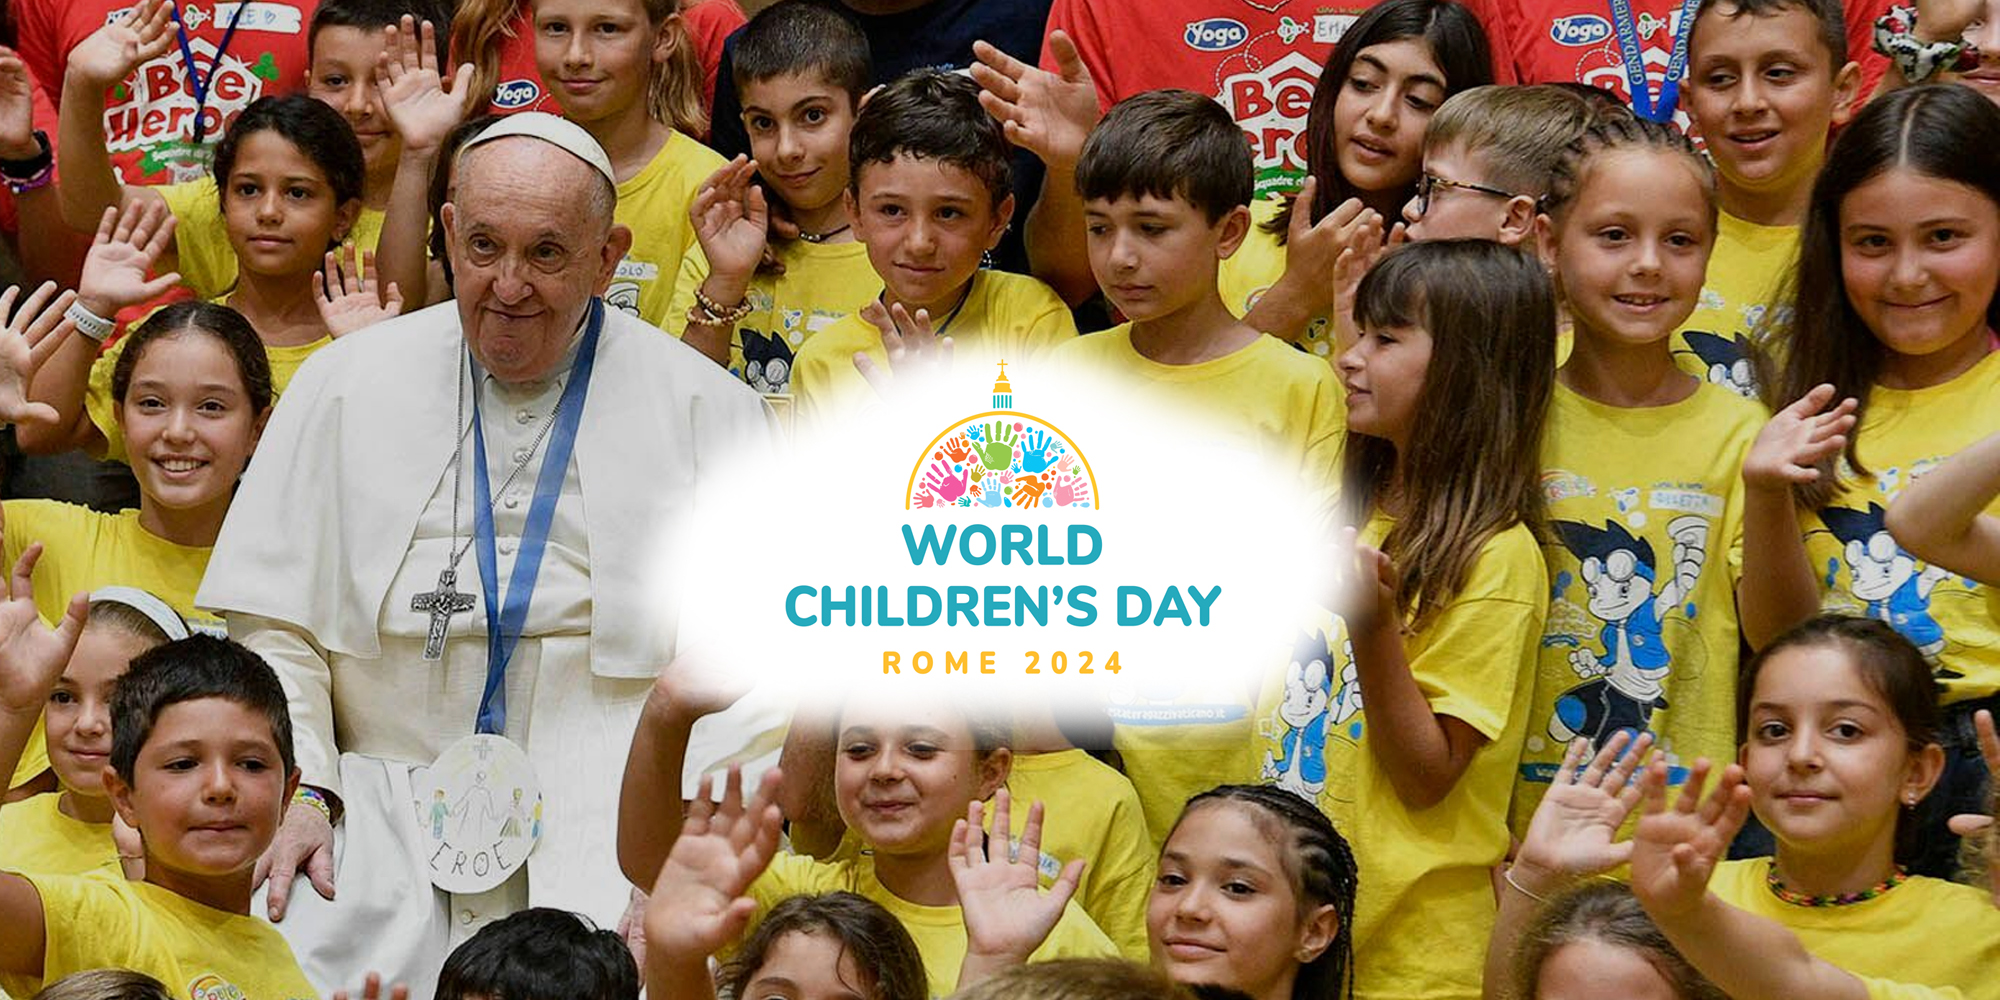 WORLD CHILDREN'S DAY